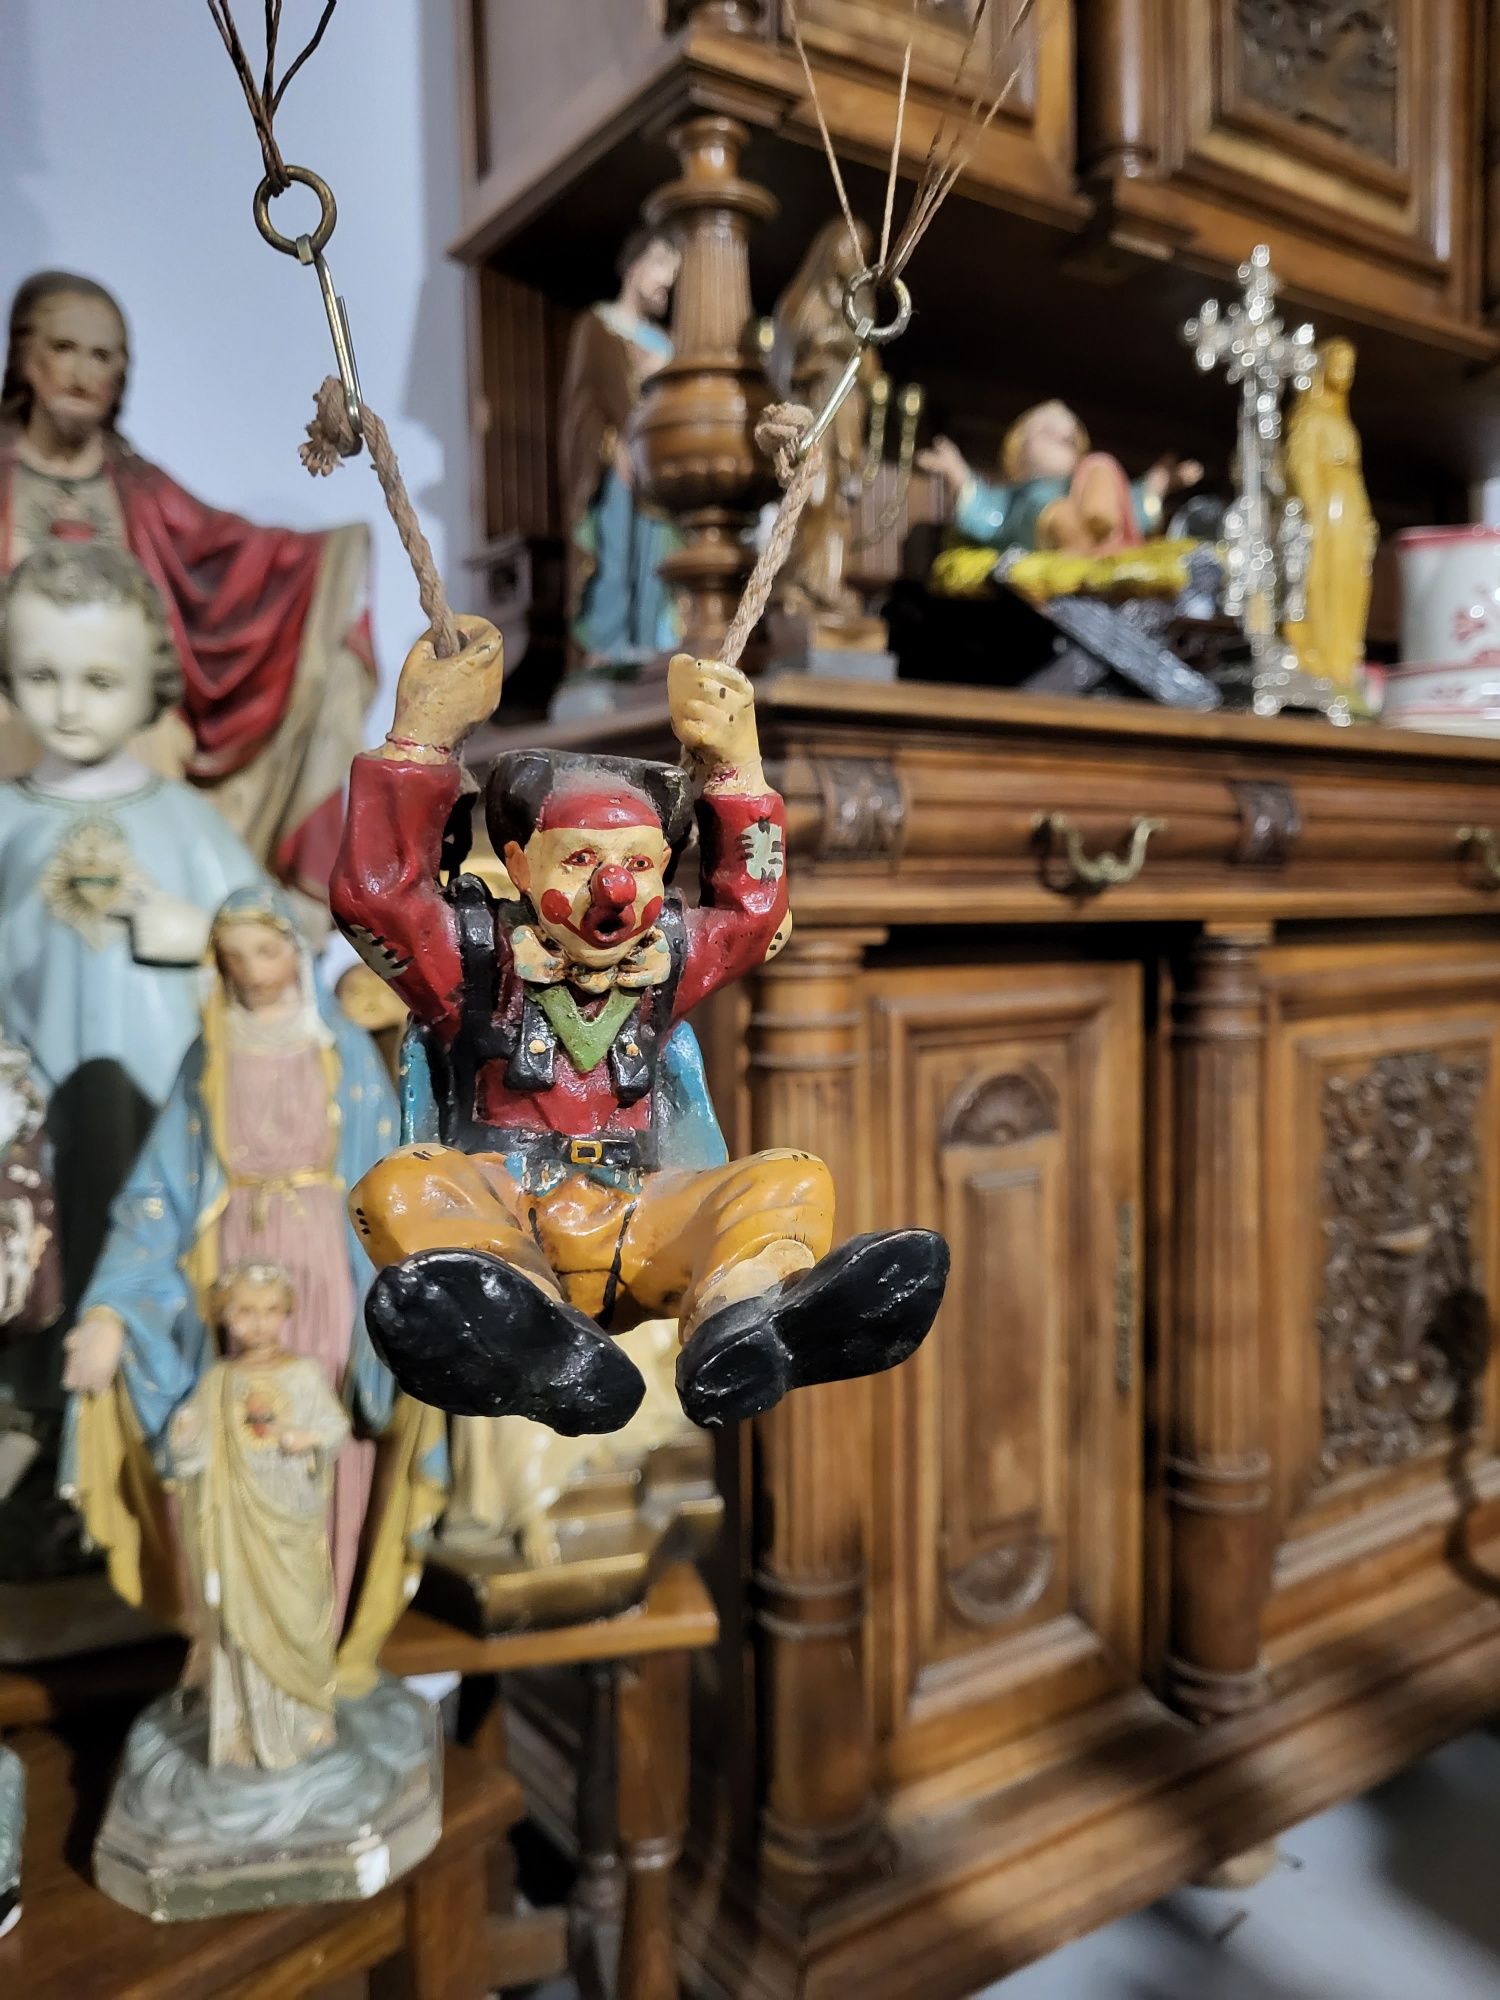 Spadochroniarz klaun clown dekoracyjny vintage retro